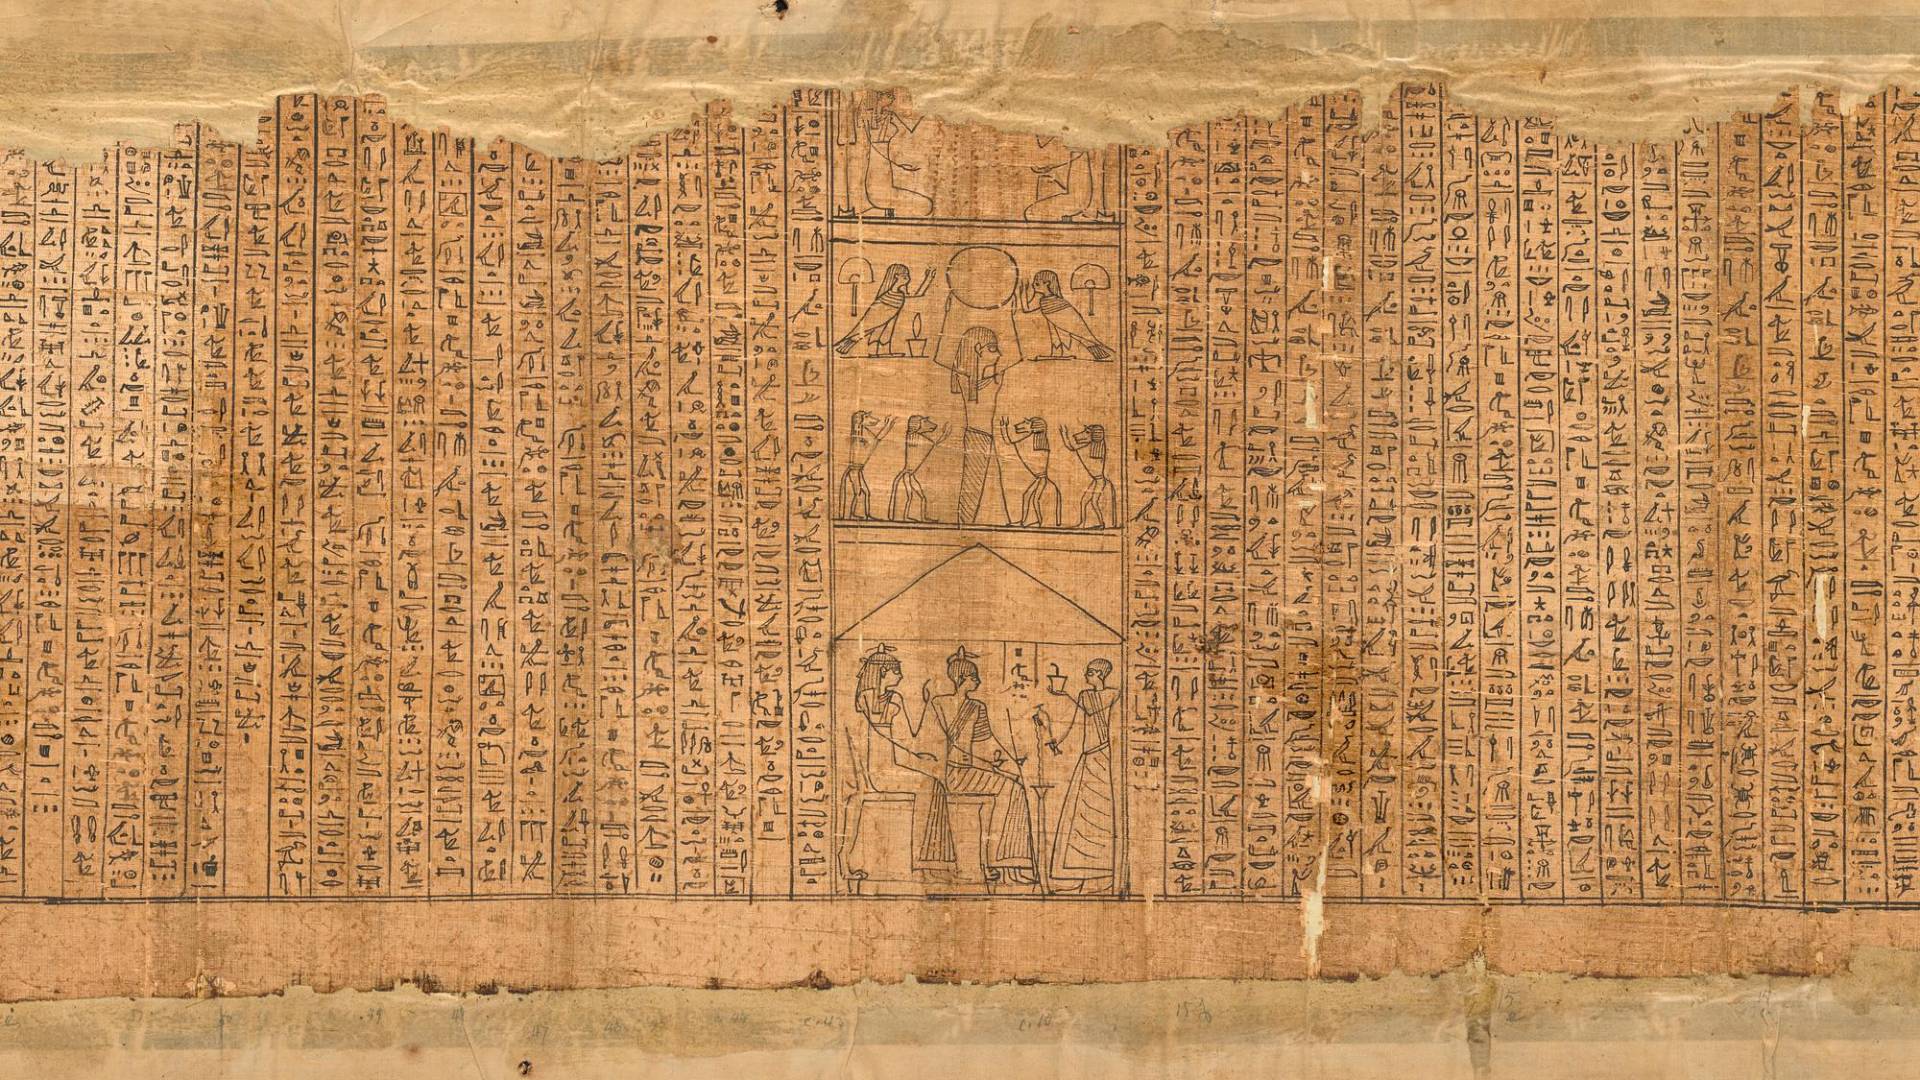 $!Un trozo del Papiro de Pasherashakhet, parte de varios pergaminos funerarios del antiguo Egipto hoy exhibidos. (Museo J. Paul Getty)